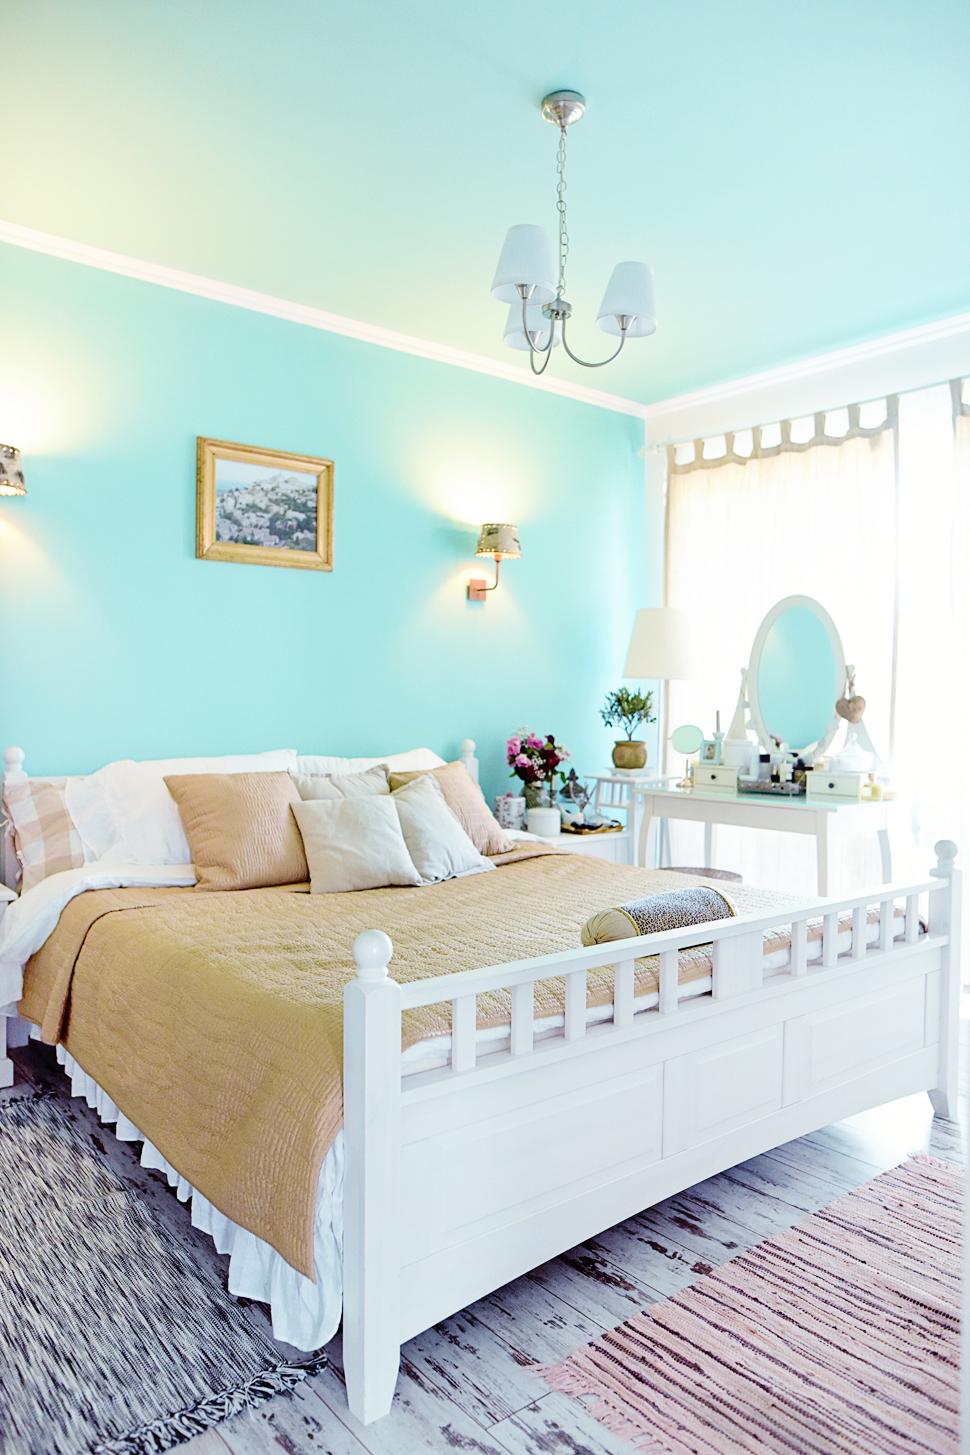 Inexpensive Vintage bedroom ideas